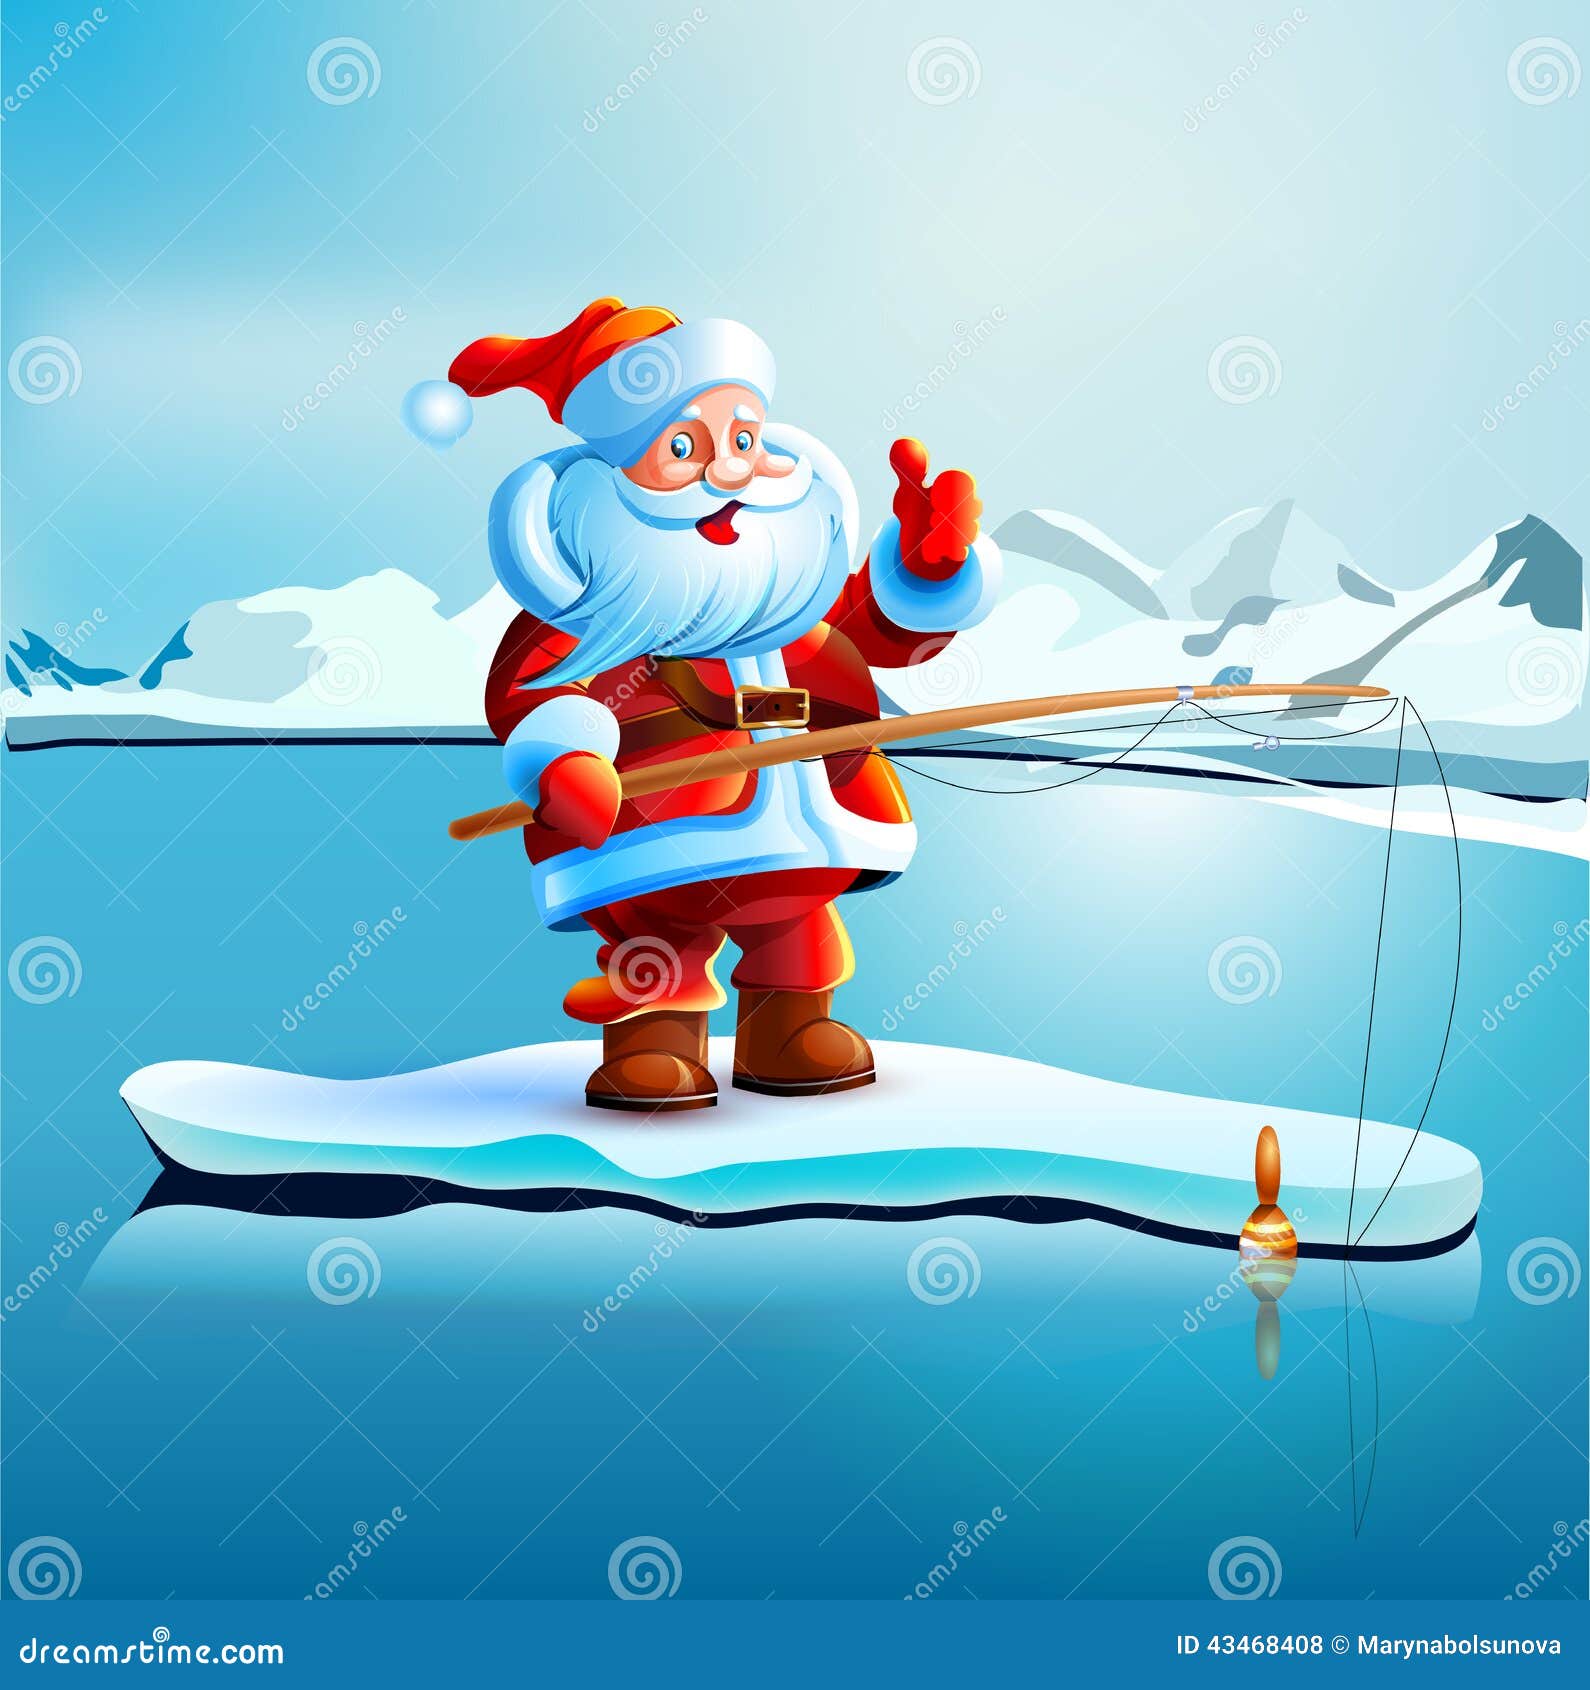 Santa Claus Shows Thumbs Up. Stock Vector - Image: 43468408